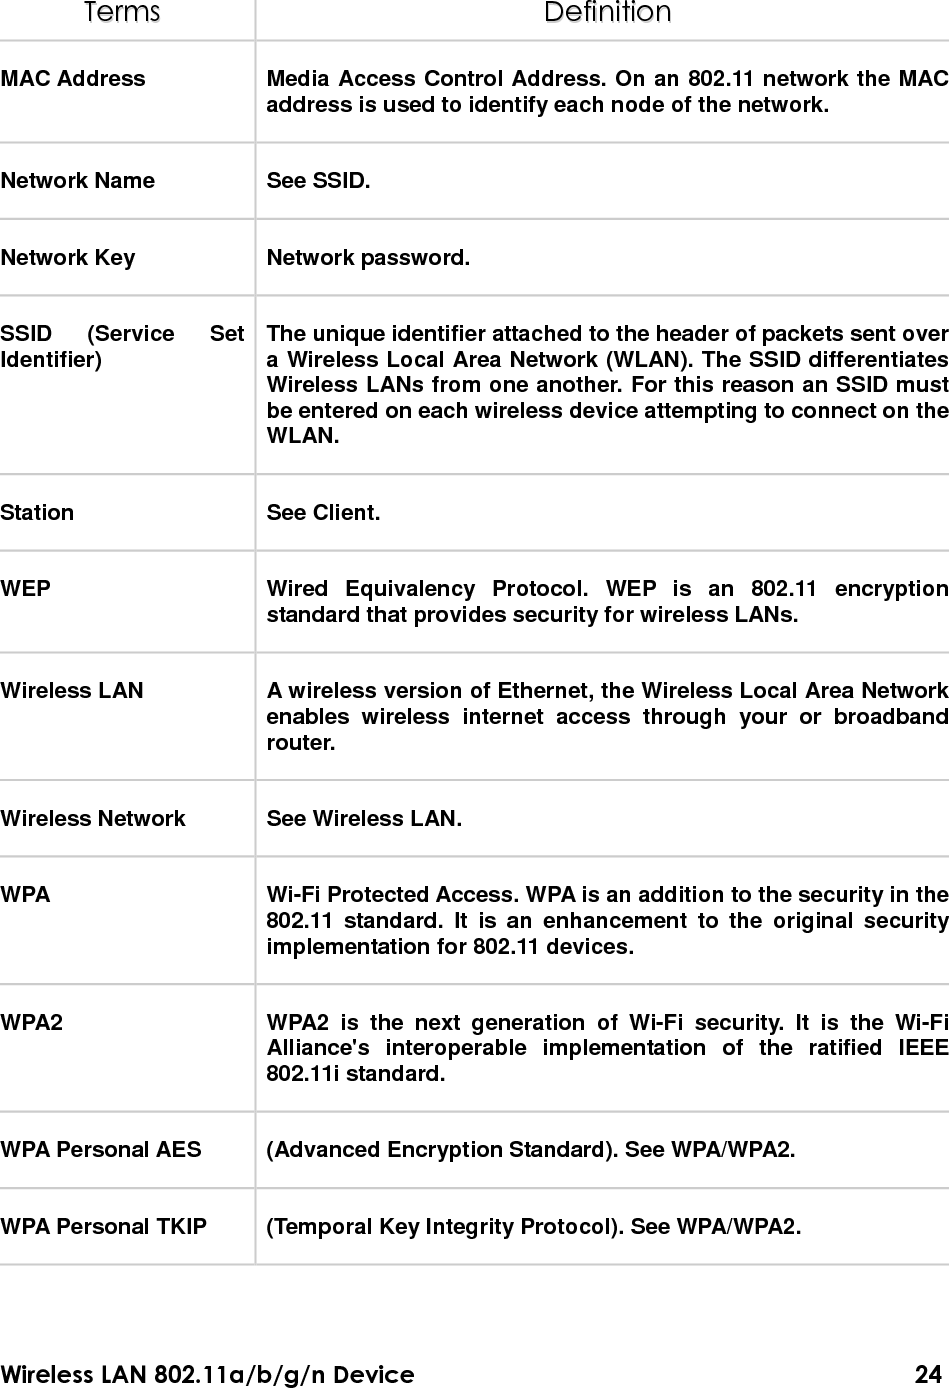 Wireless LAN 802.11a/b/g/n Device                                                                                  25 